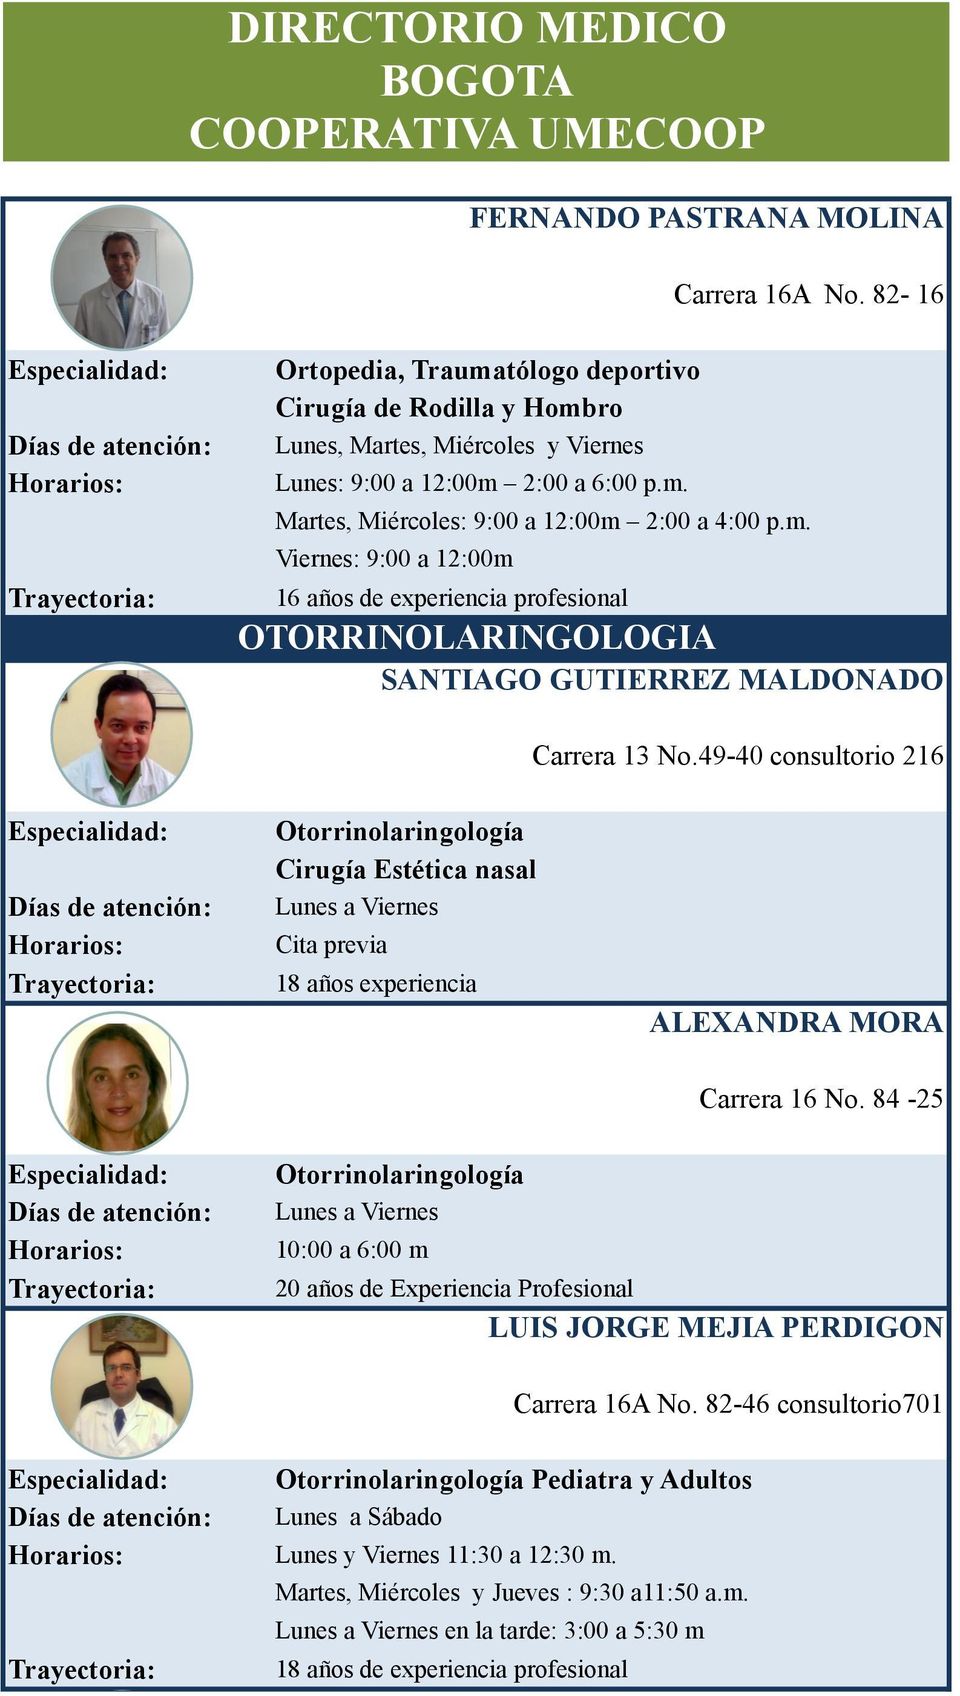 49-40 consultorio 216 Otorrinolaringología Cirugía Estética nasal Cita previa 18 años experiencia ALEXANDRA MORA Carrera 16 No.